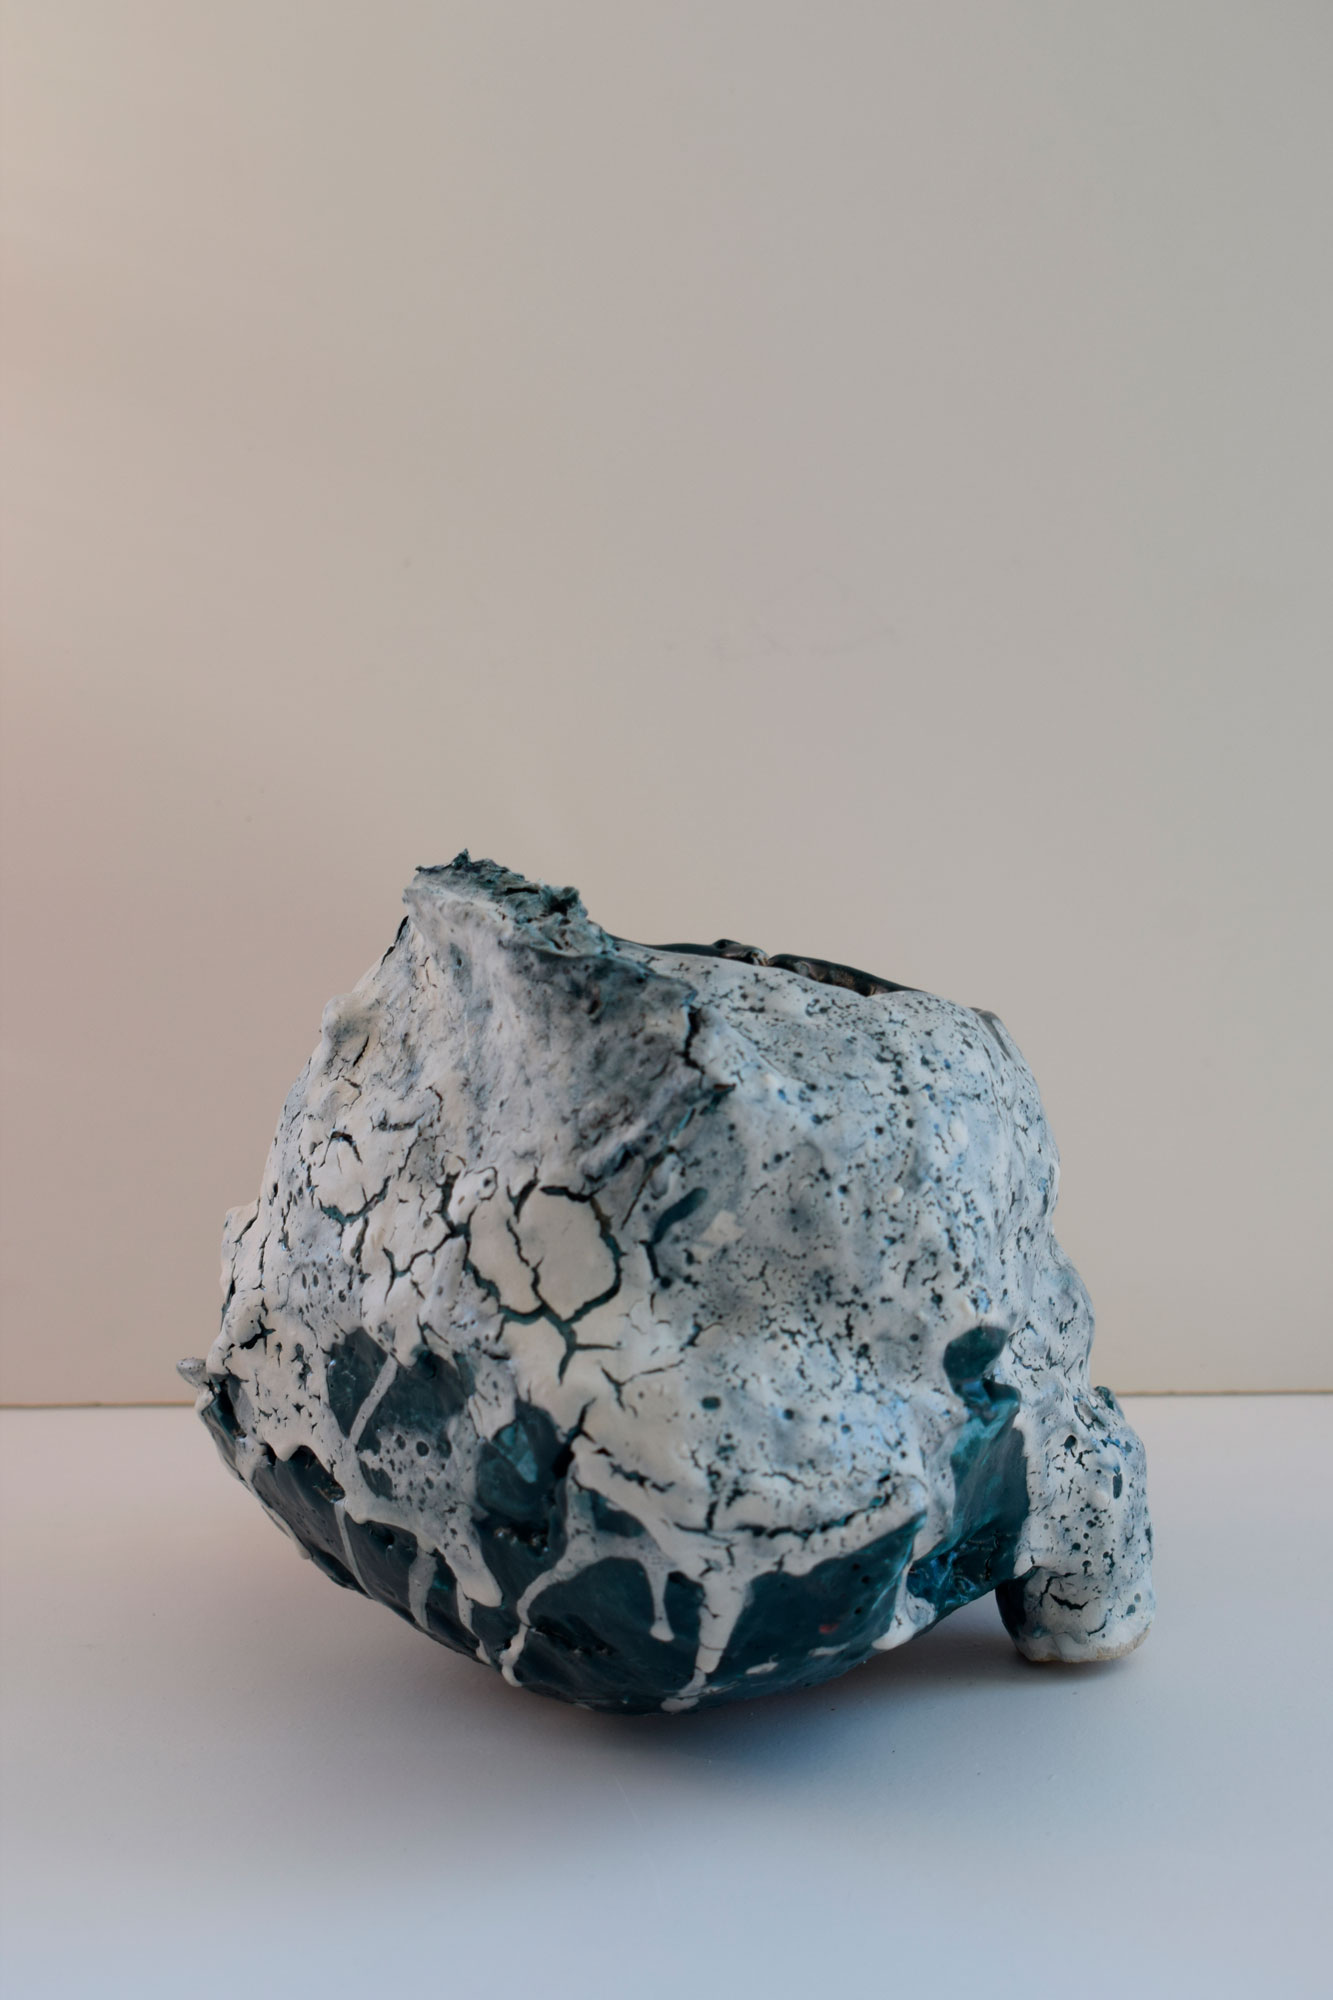 Sculpture céramique - Grès avec engobes et émail colorés, cuisson au four électrique - 14 x 14 x 14 cm - 2021 - Photo : Sonja Delforce